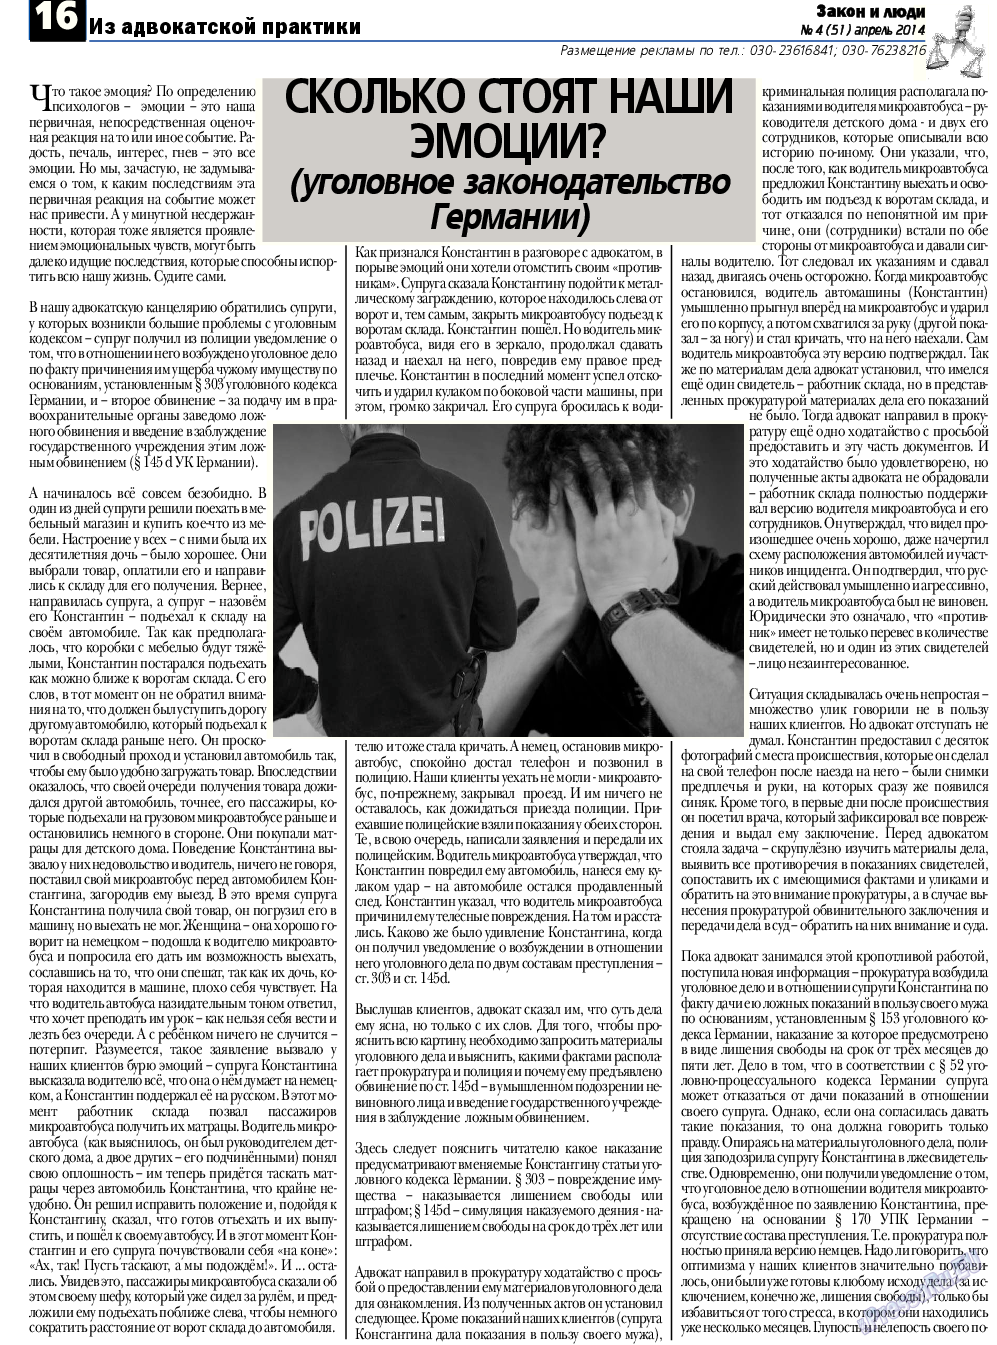 Закон и люди, газета. 2014 №4 стр.16